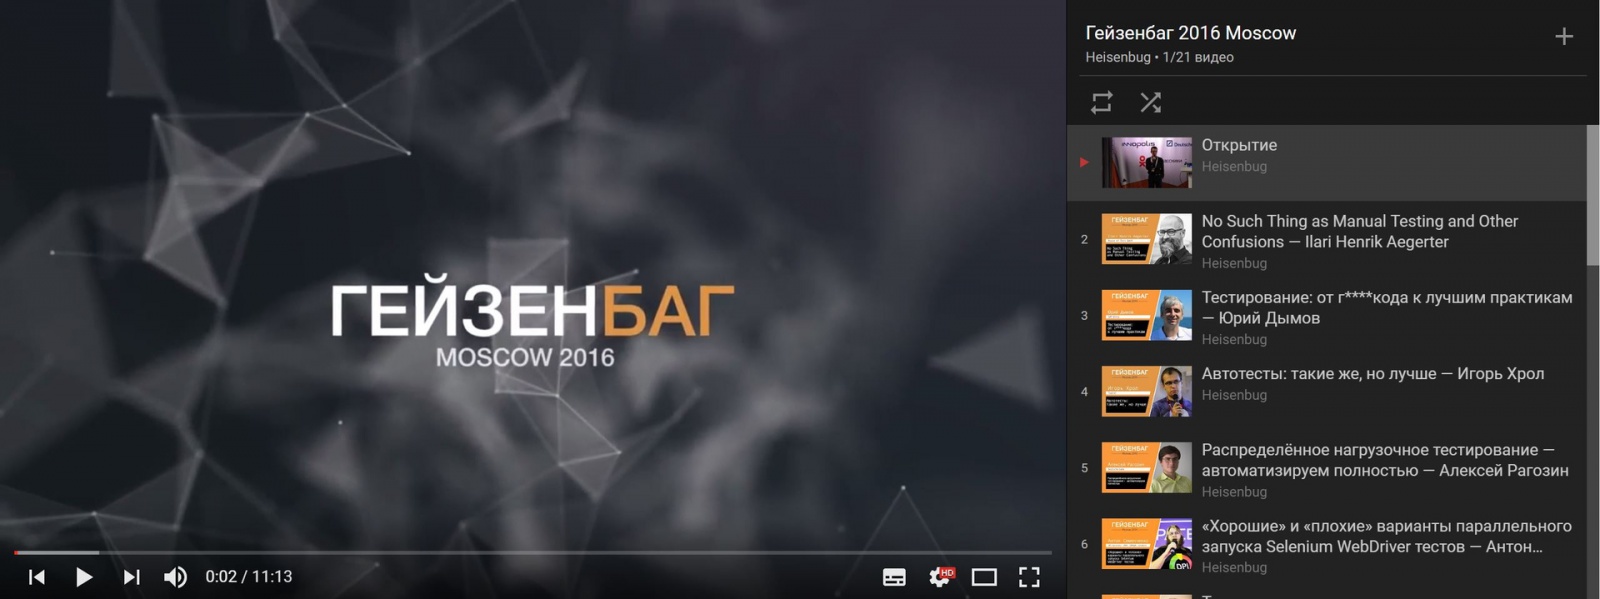 Топ-10 докладов конференции Гейзенбаг 2016 Moscow - 1